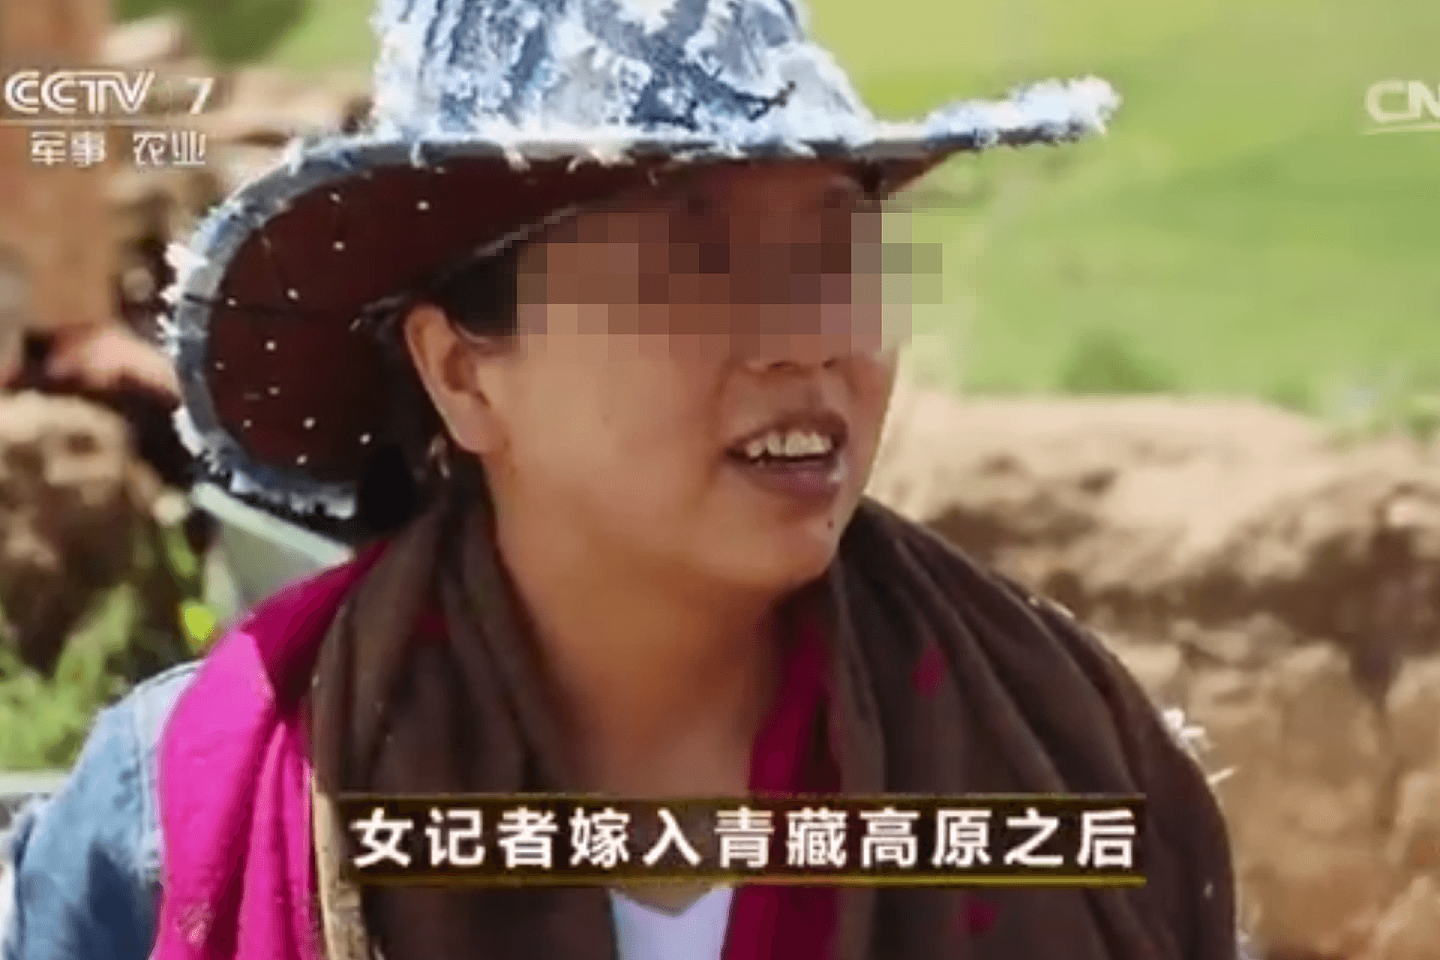 马金瑜还曾经上过央视第七频道的《致富经》，该节目主要讲述中国农村地区的人勤劳致富、科技致富、创新致富等故事。（中国央视截图）